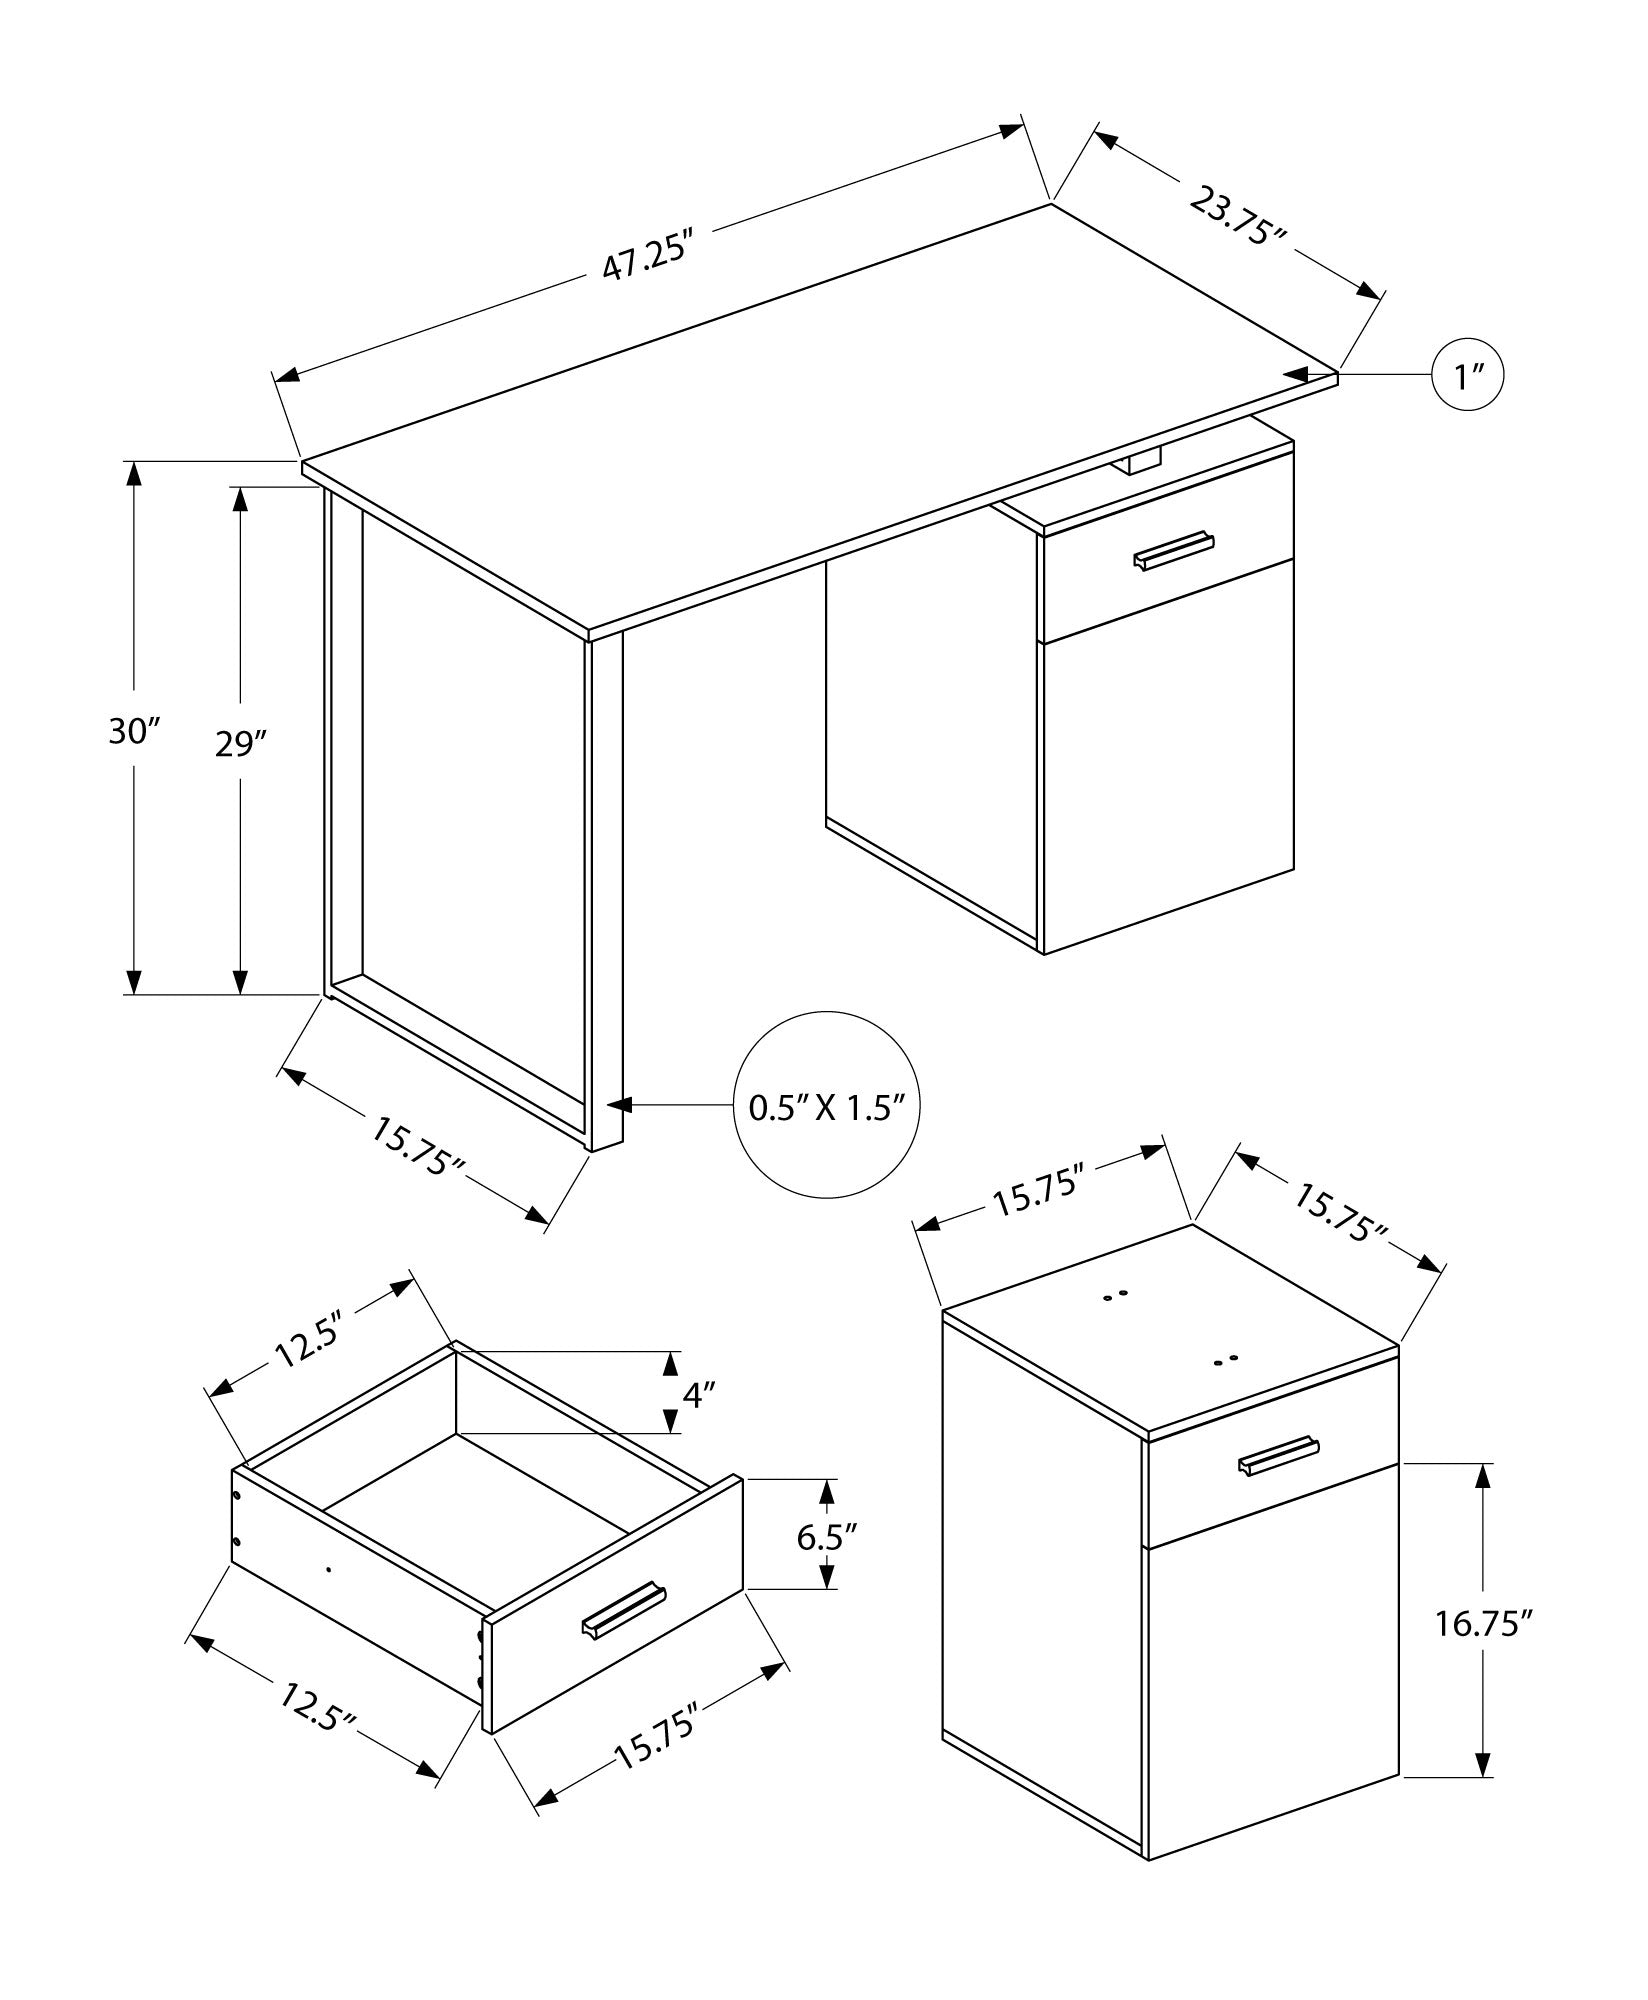 MN-197765    Computer Desk - Storage Drawer / Cabinet / Left Or Right Setup / Floating Desktop - 48"L - Medium Brown Reclaimed Wood-Look  / Black